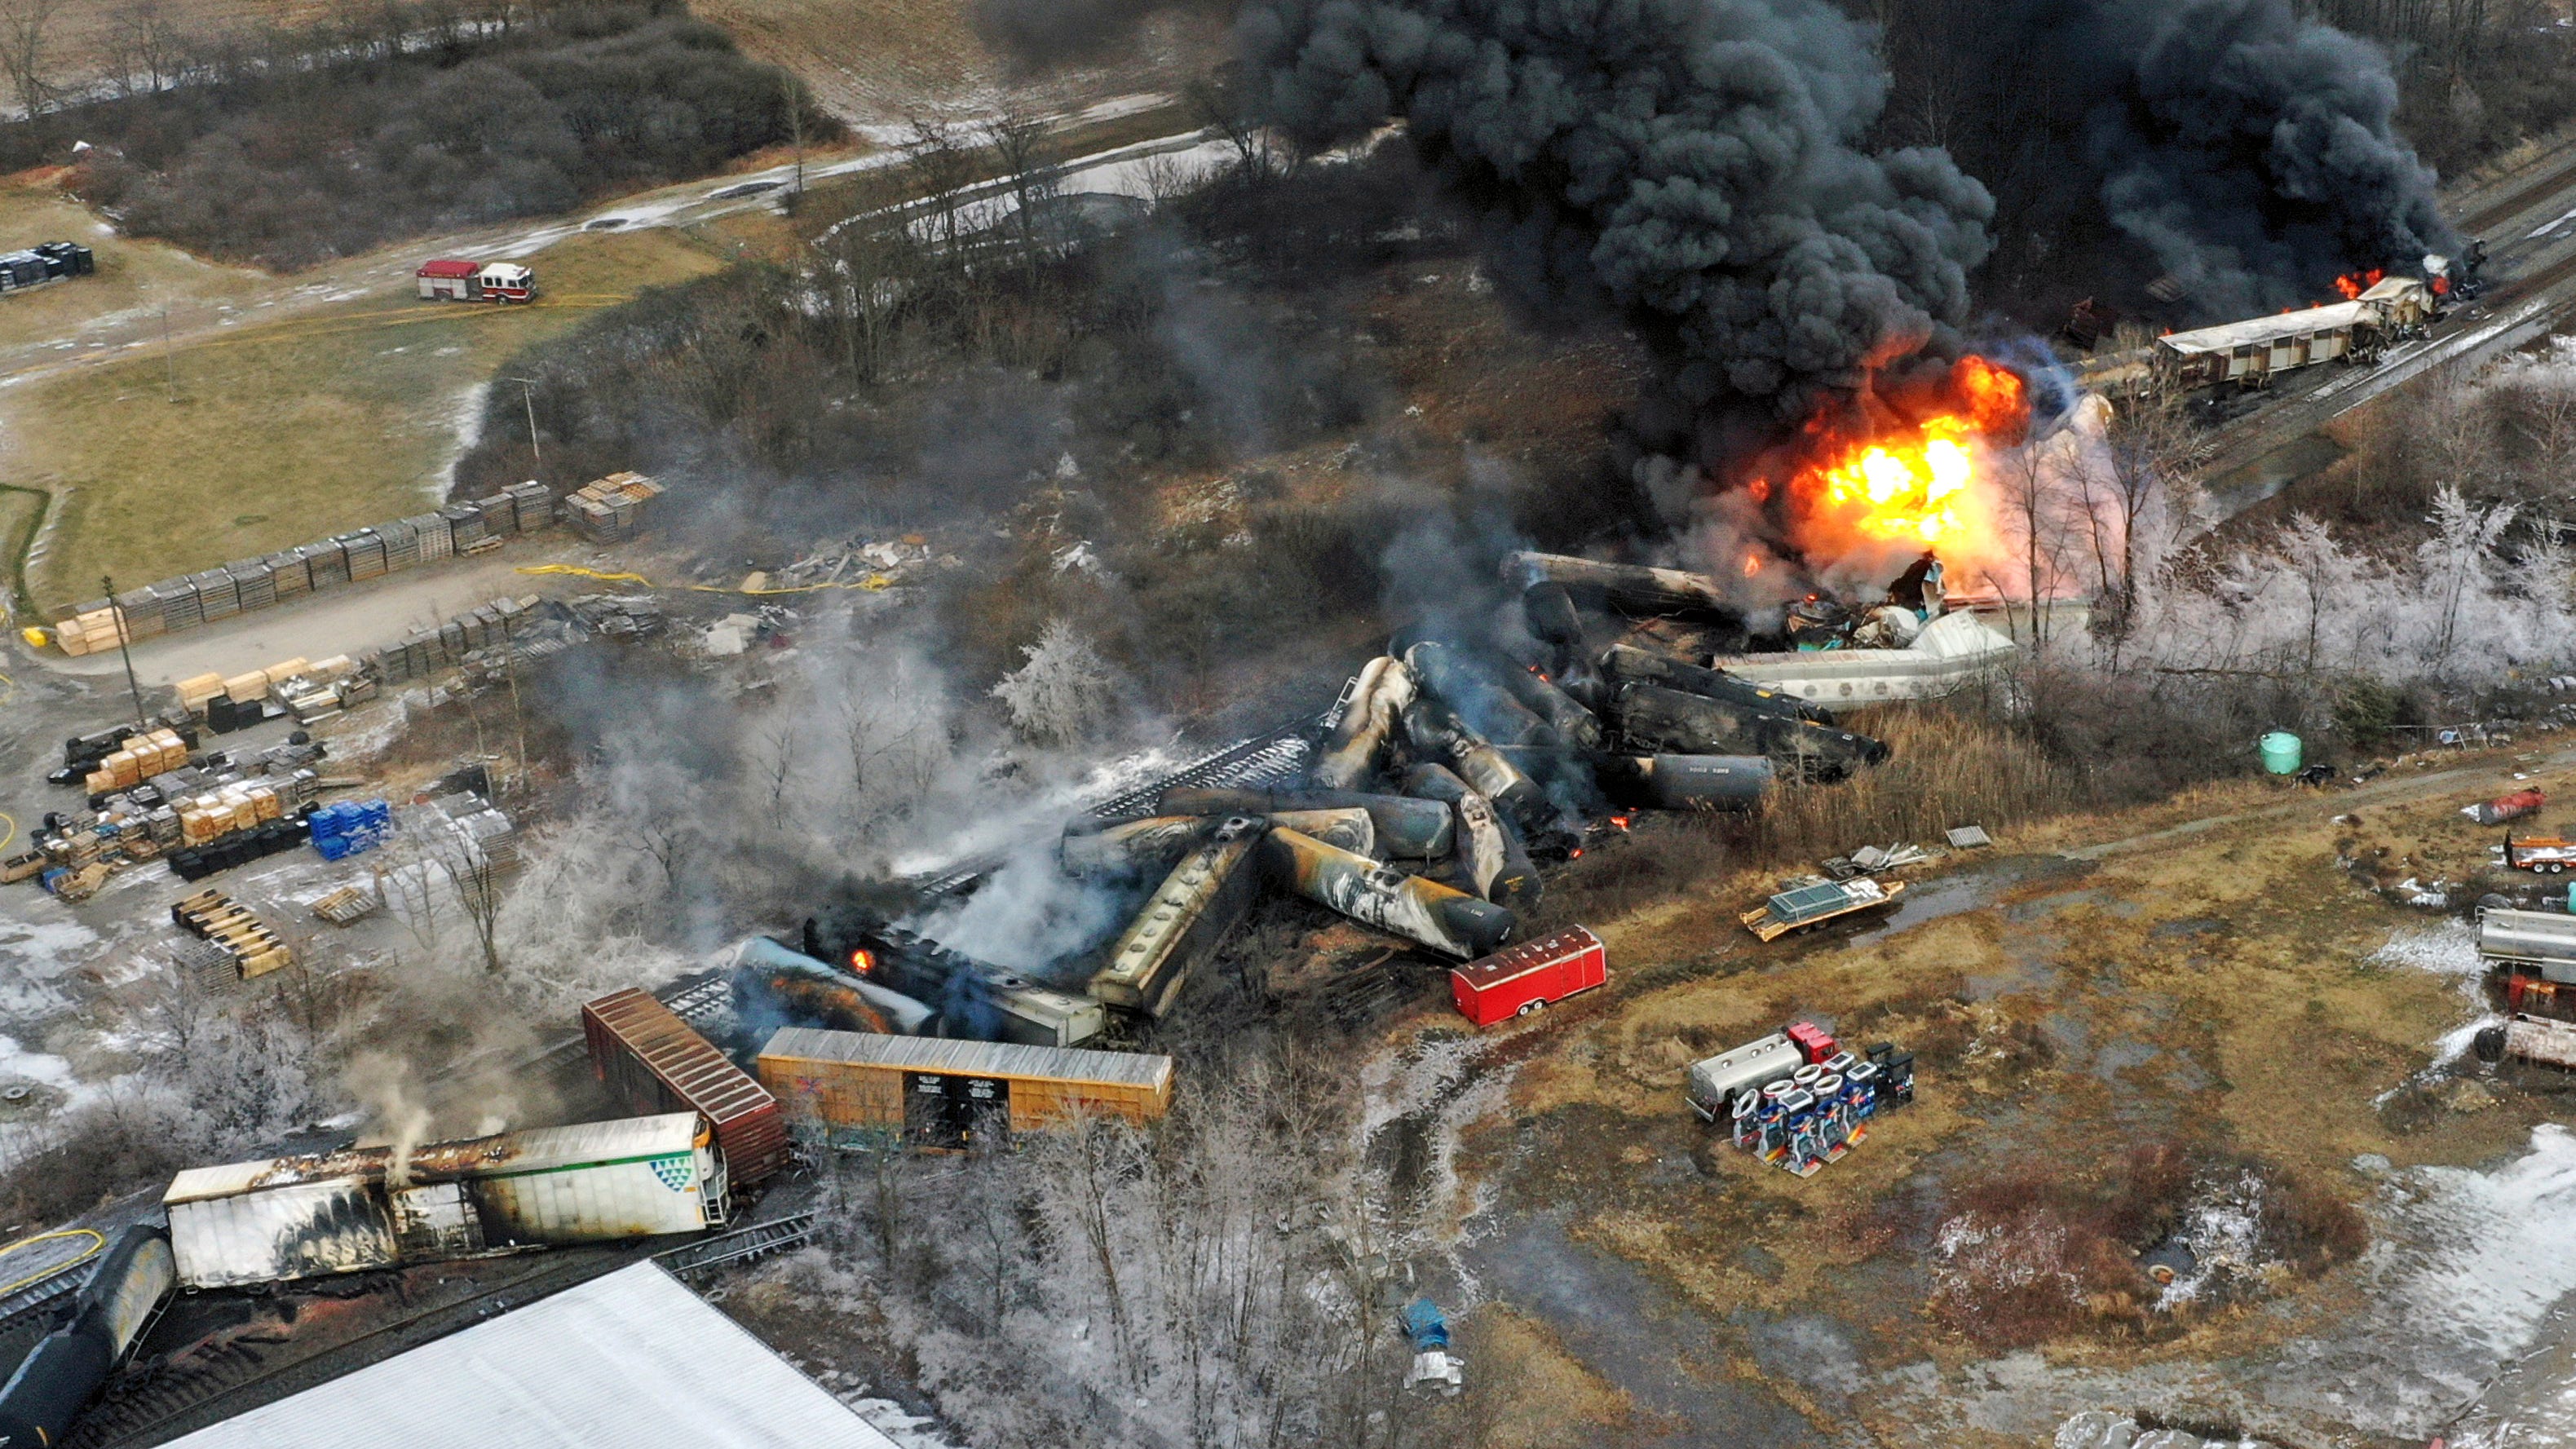 Luftbild eines entgleisten brennenden Zuges in Ost-Palästina, Ohio